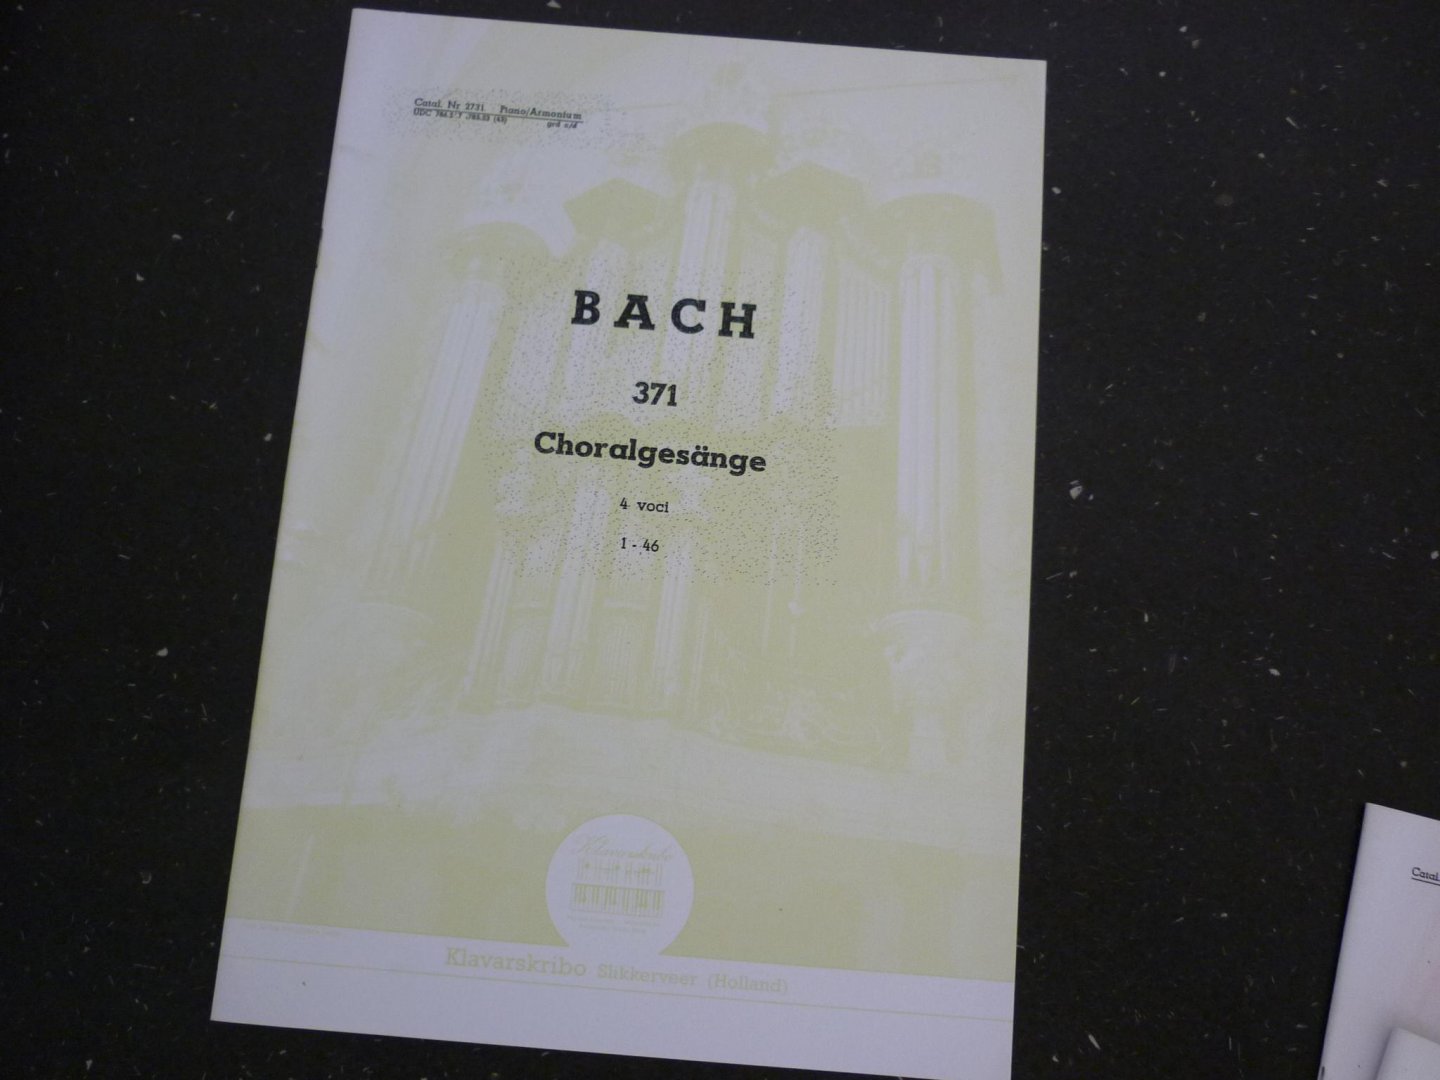 Bach - Choralgesange / 4 voci / 1 - 46 - Klavarskribo